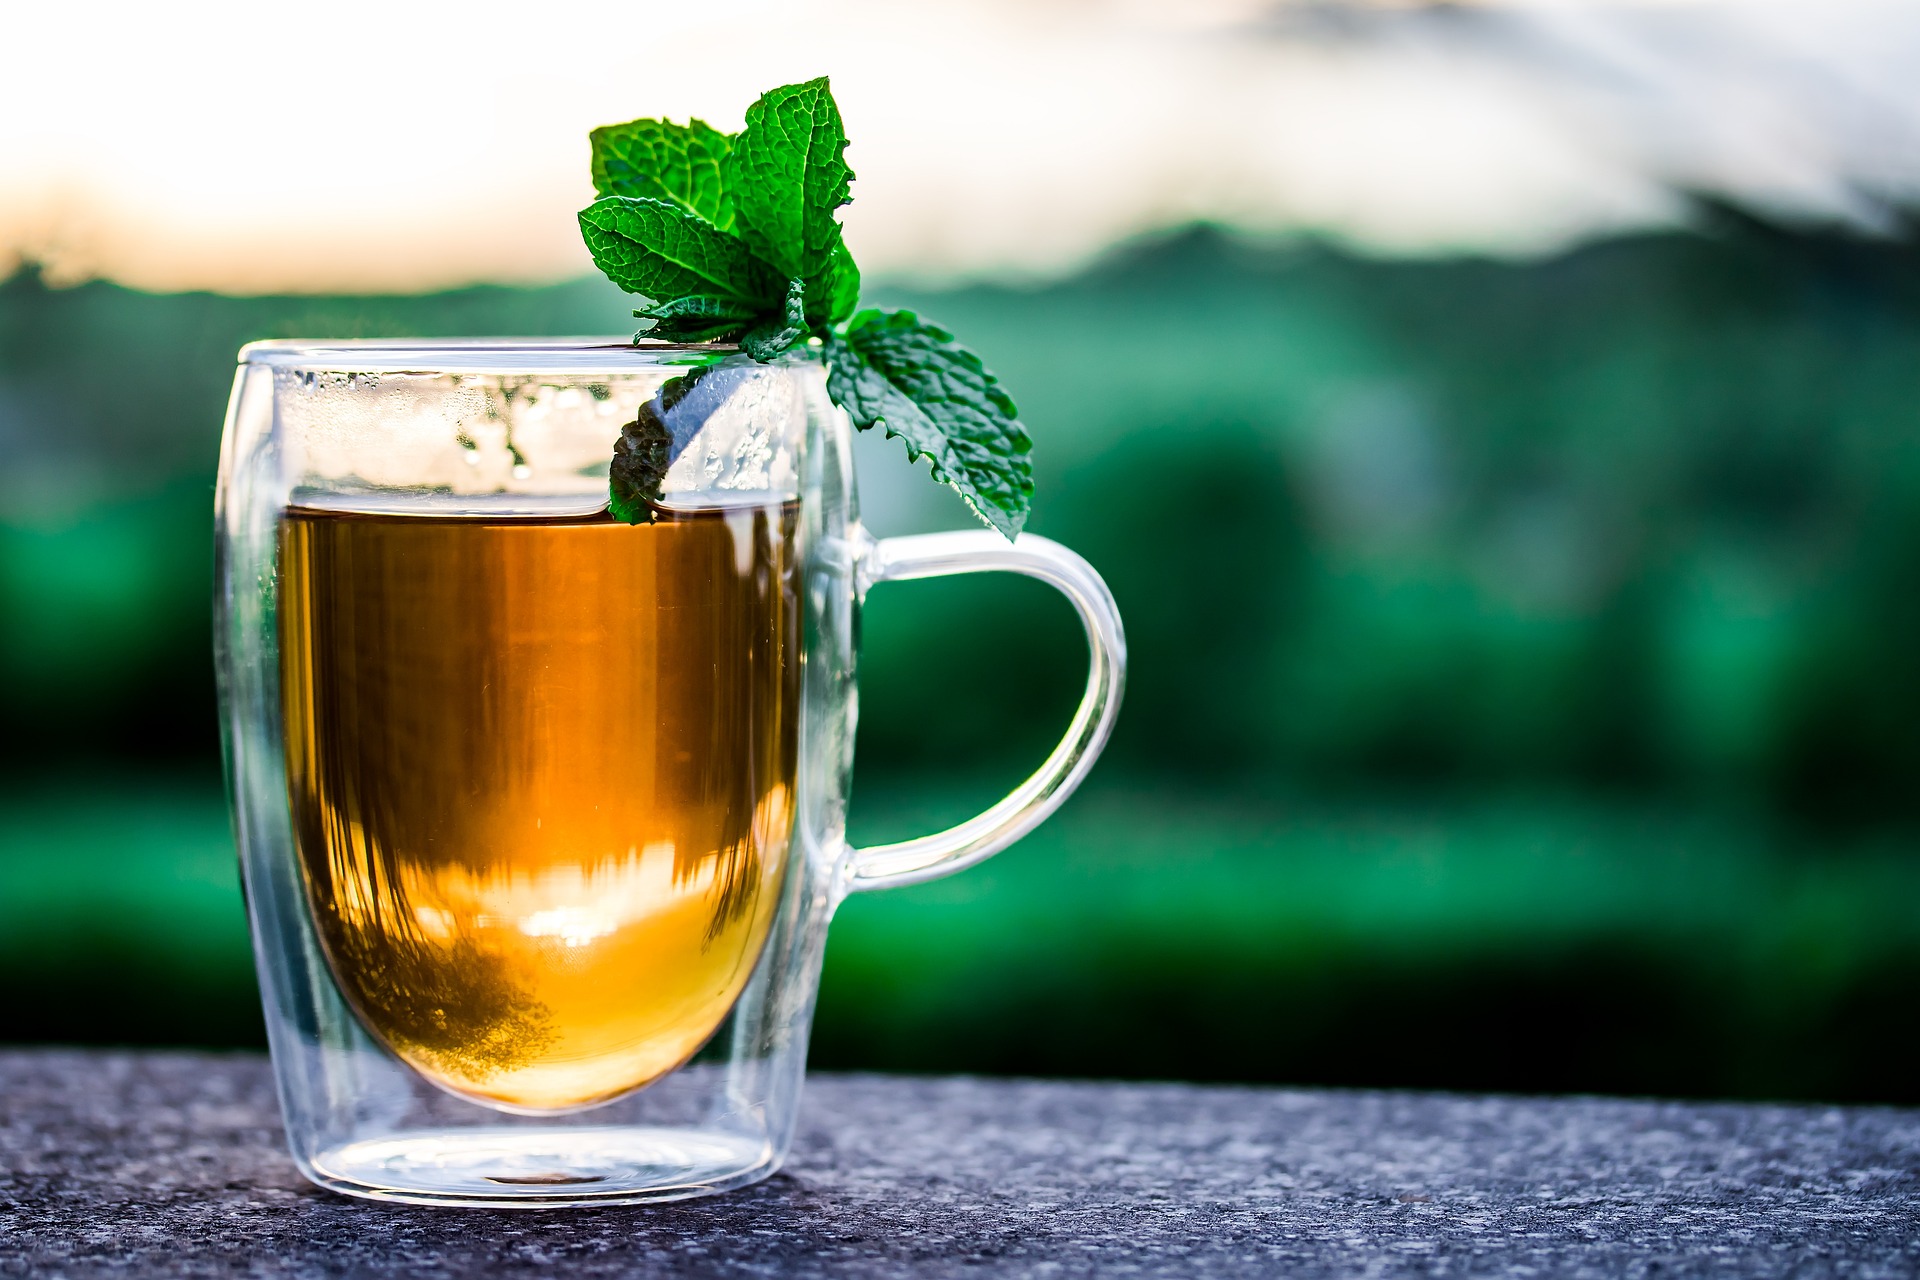 Herbatowe podróże: Odkrywanie różnorodności smaków i aromatów herbat z różnych regionów świata